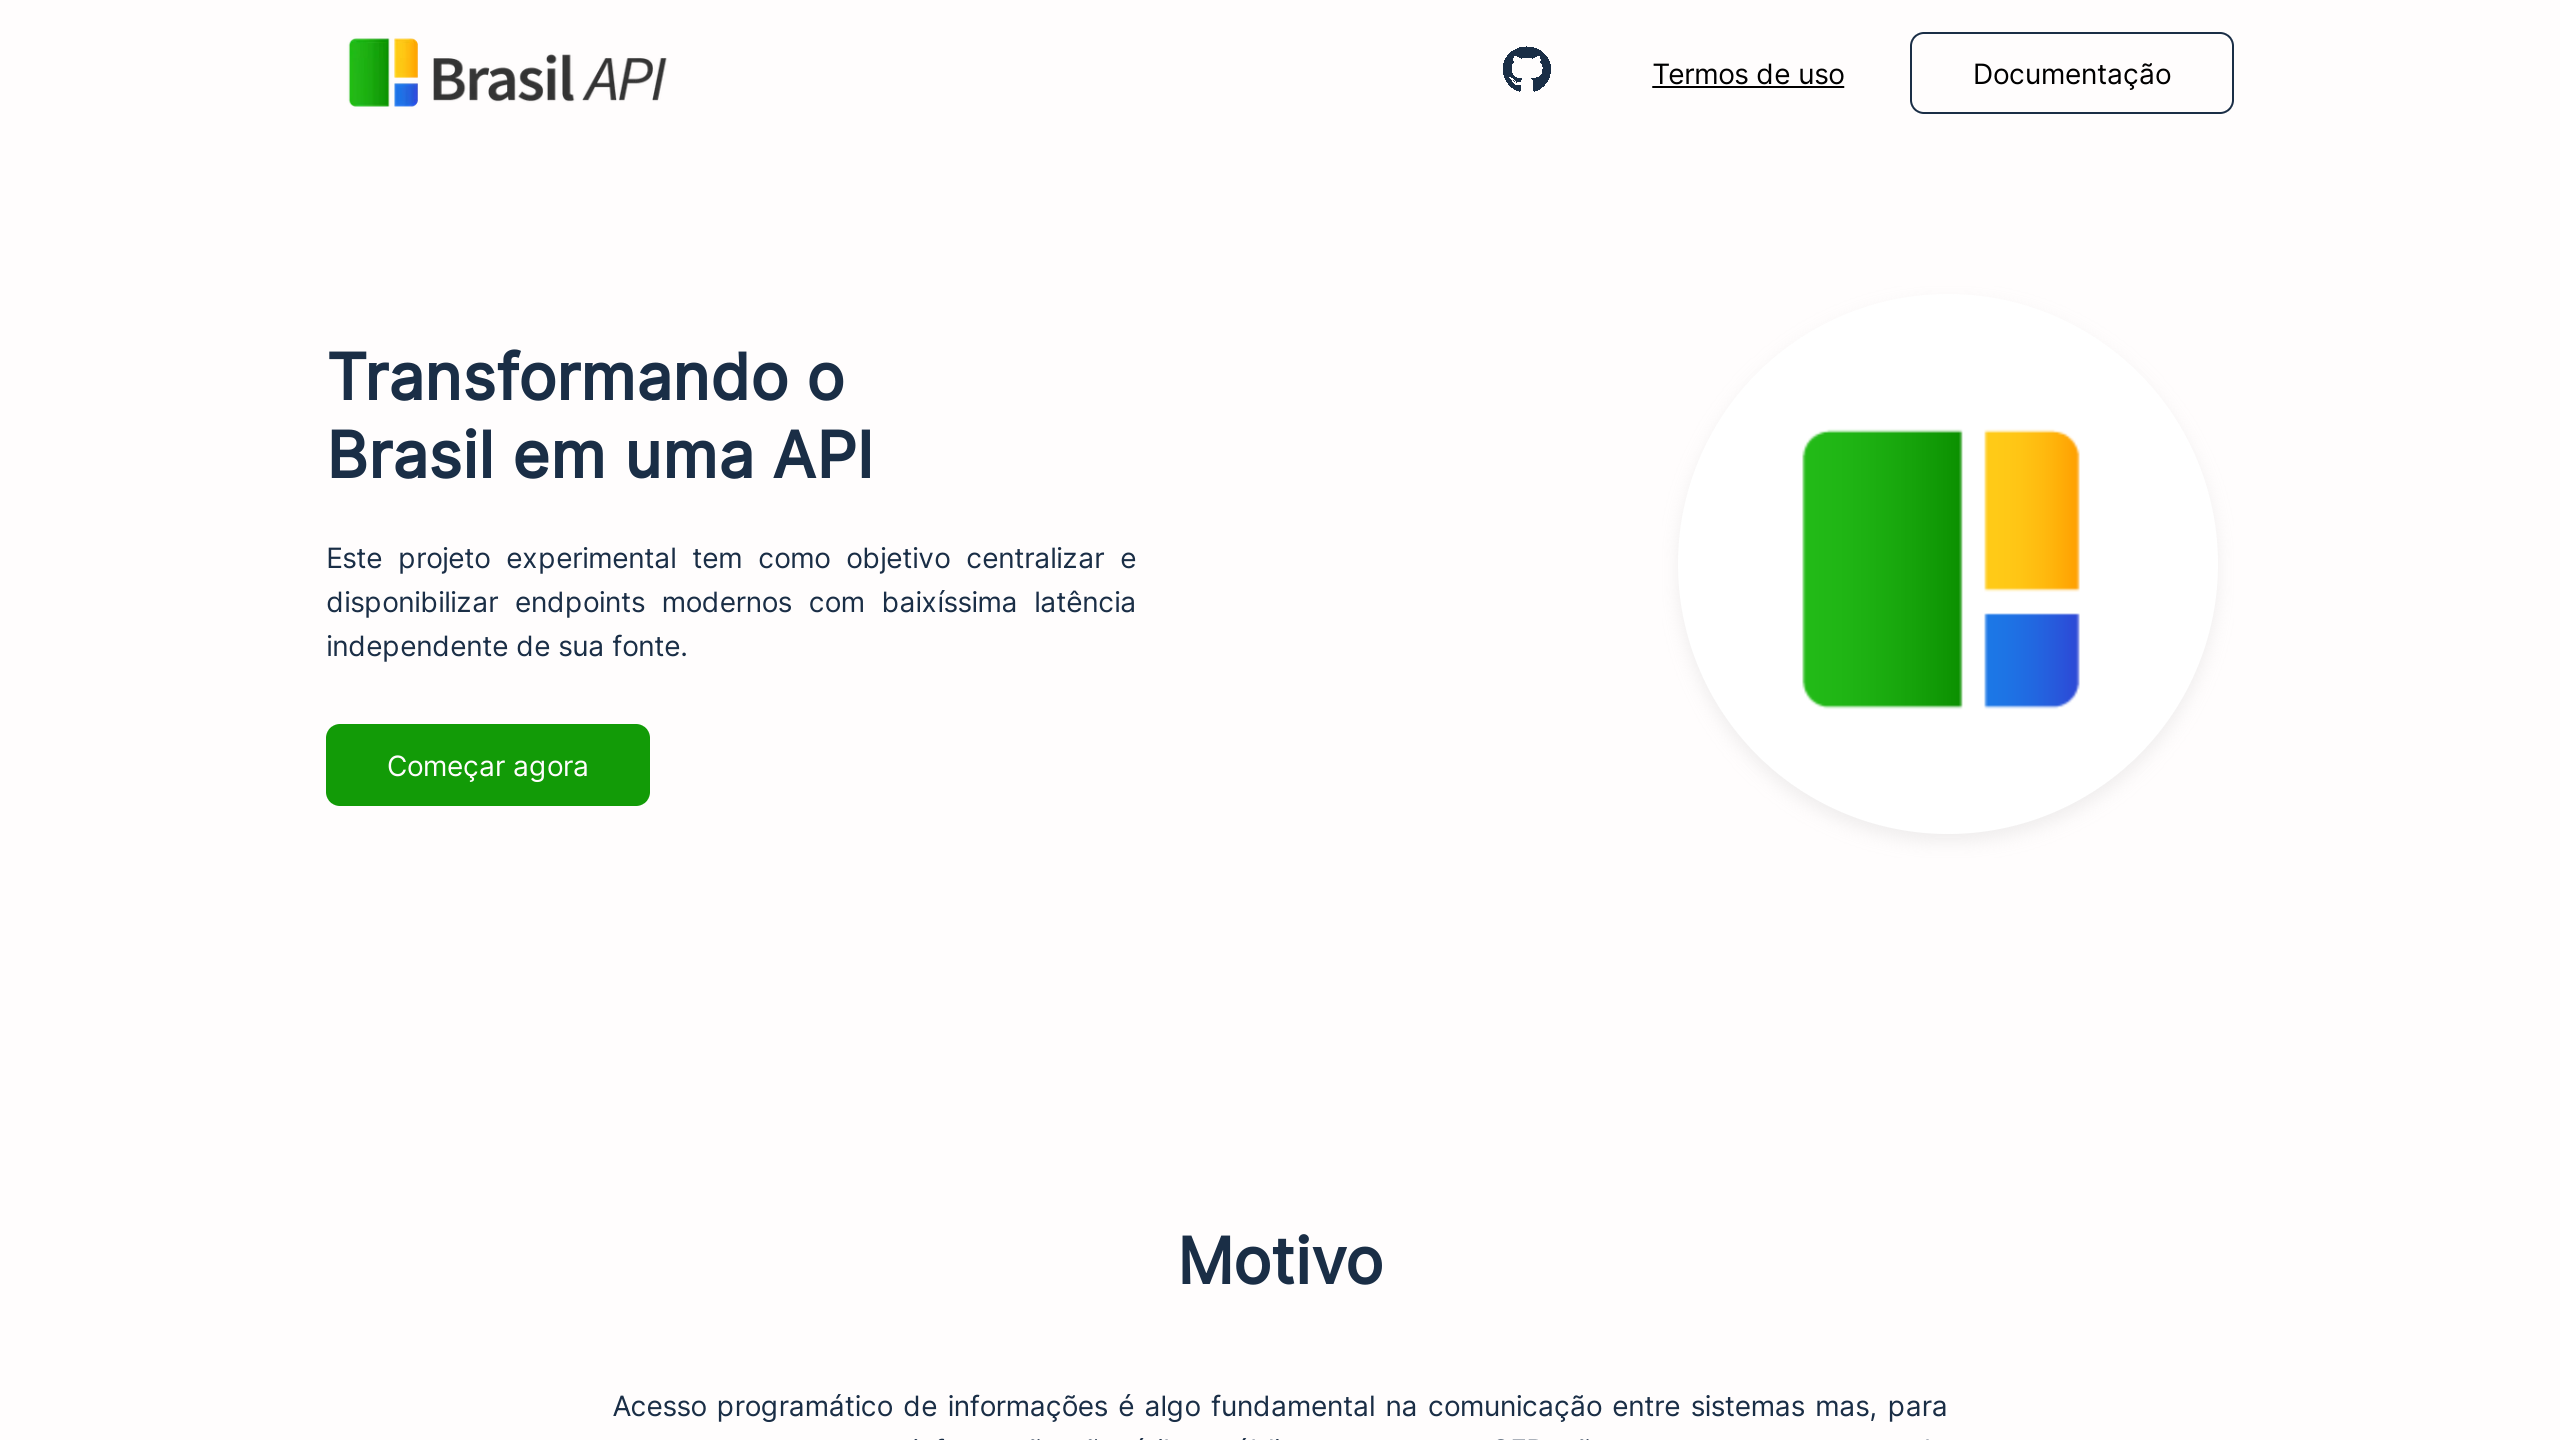 Brazil's website screenshot